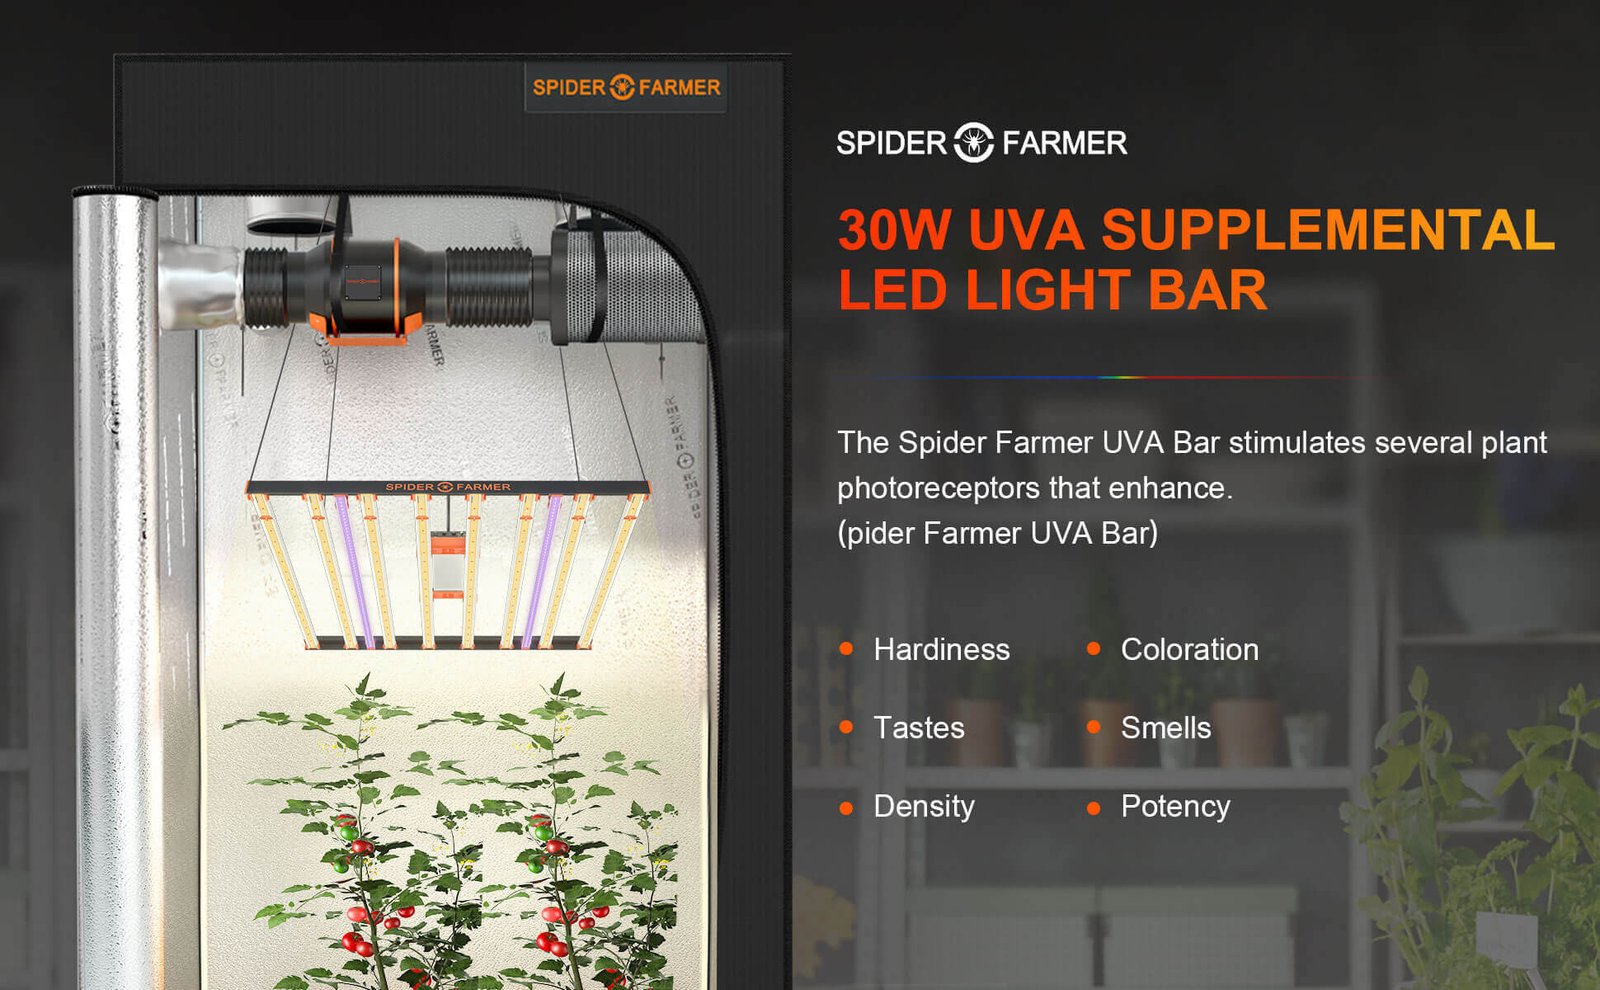 30W UVA supplemental LED light bar